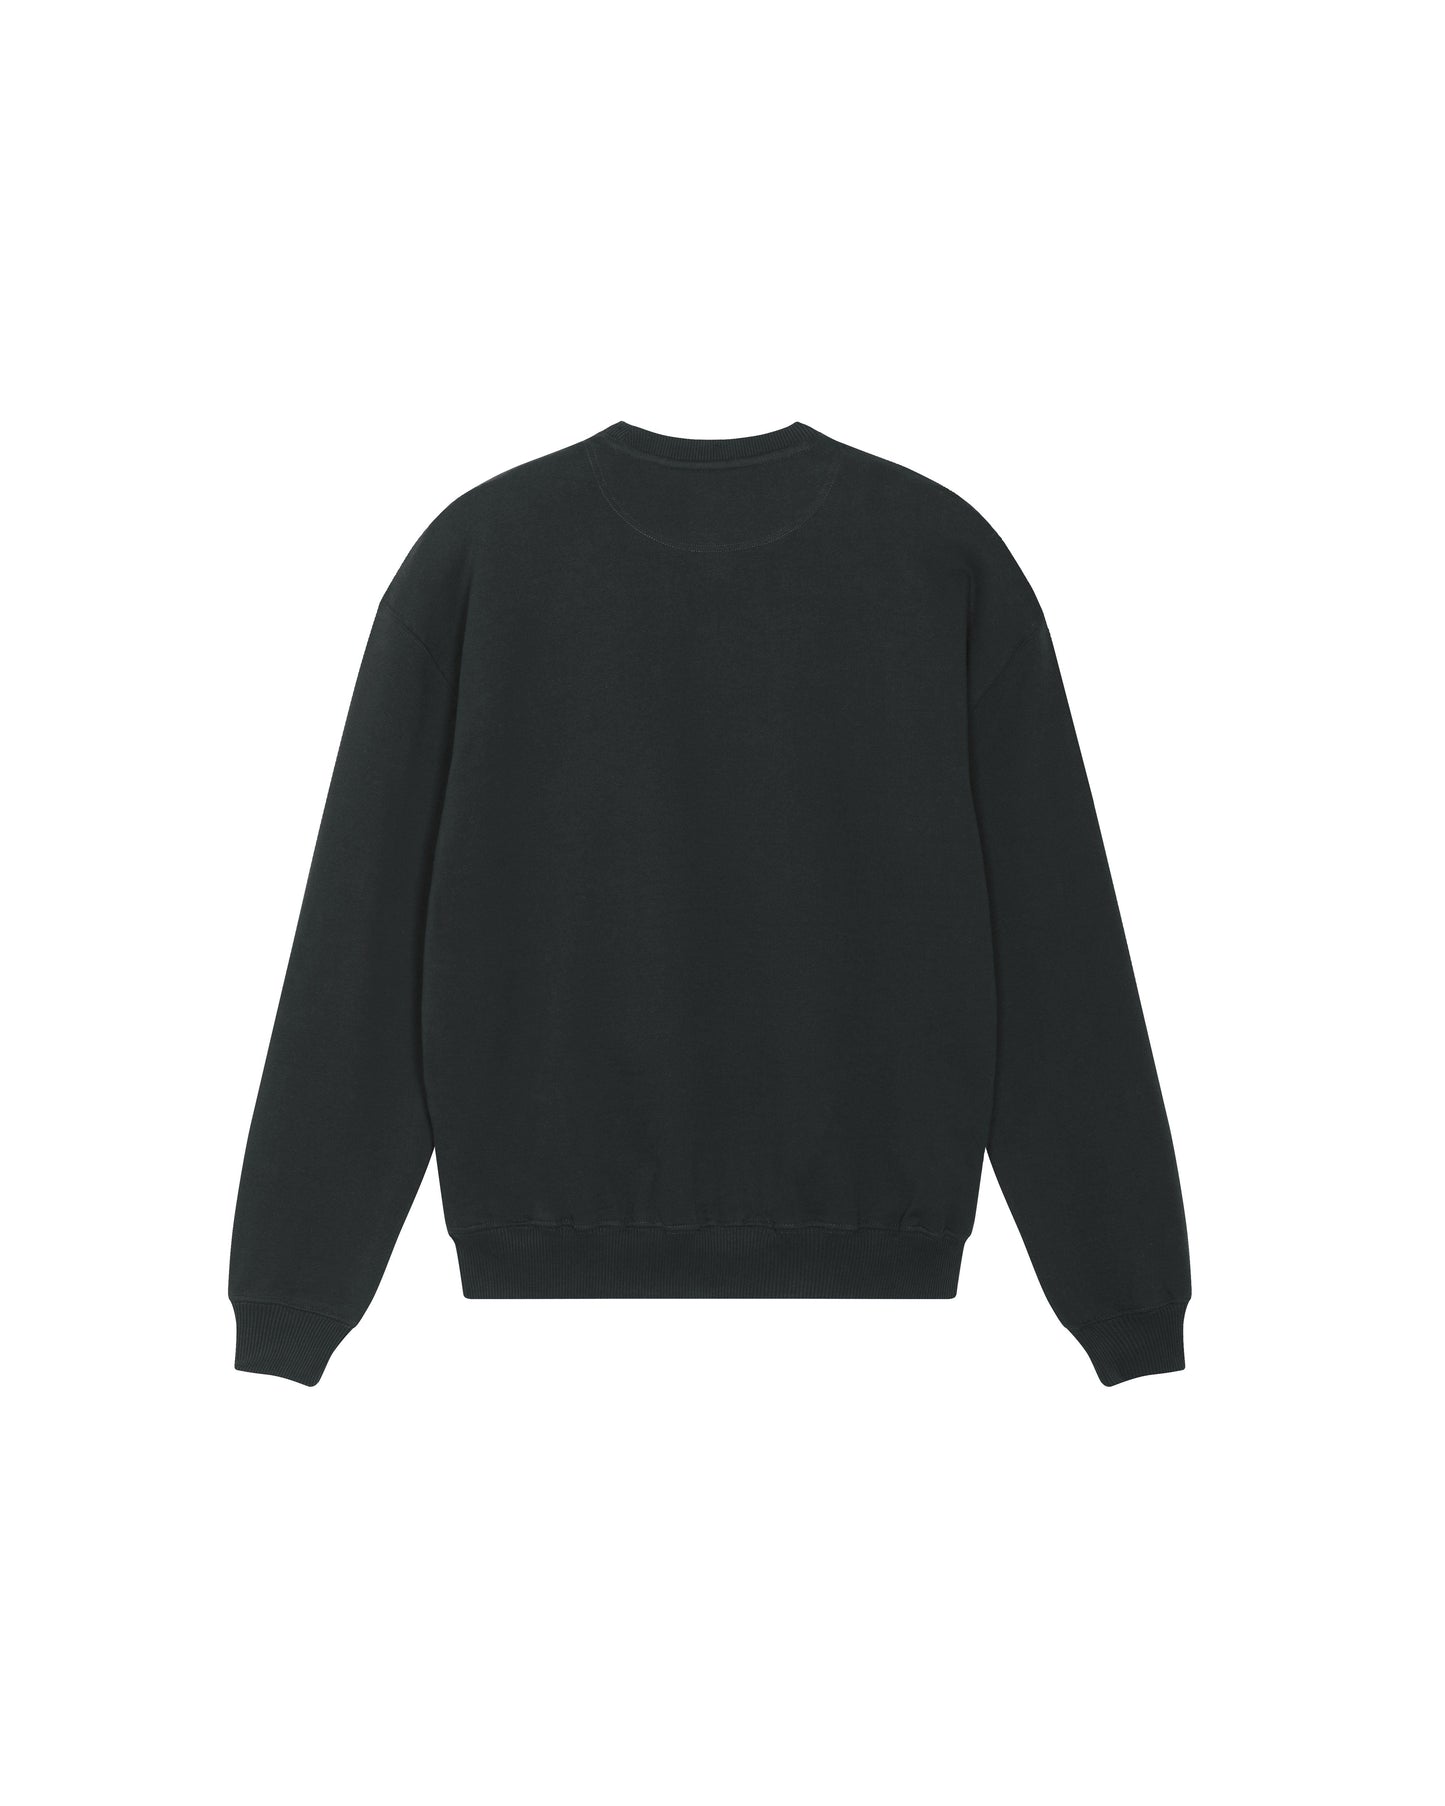 
                  
                    Wild Spirit Sweater - Black
                  
                